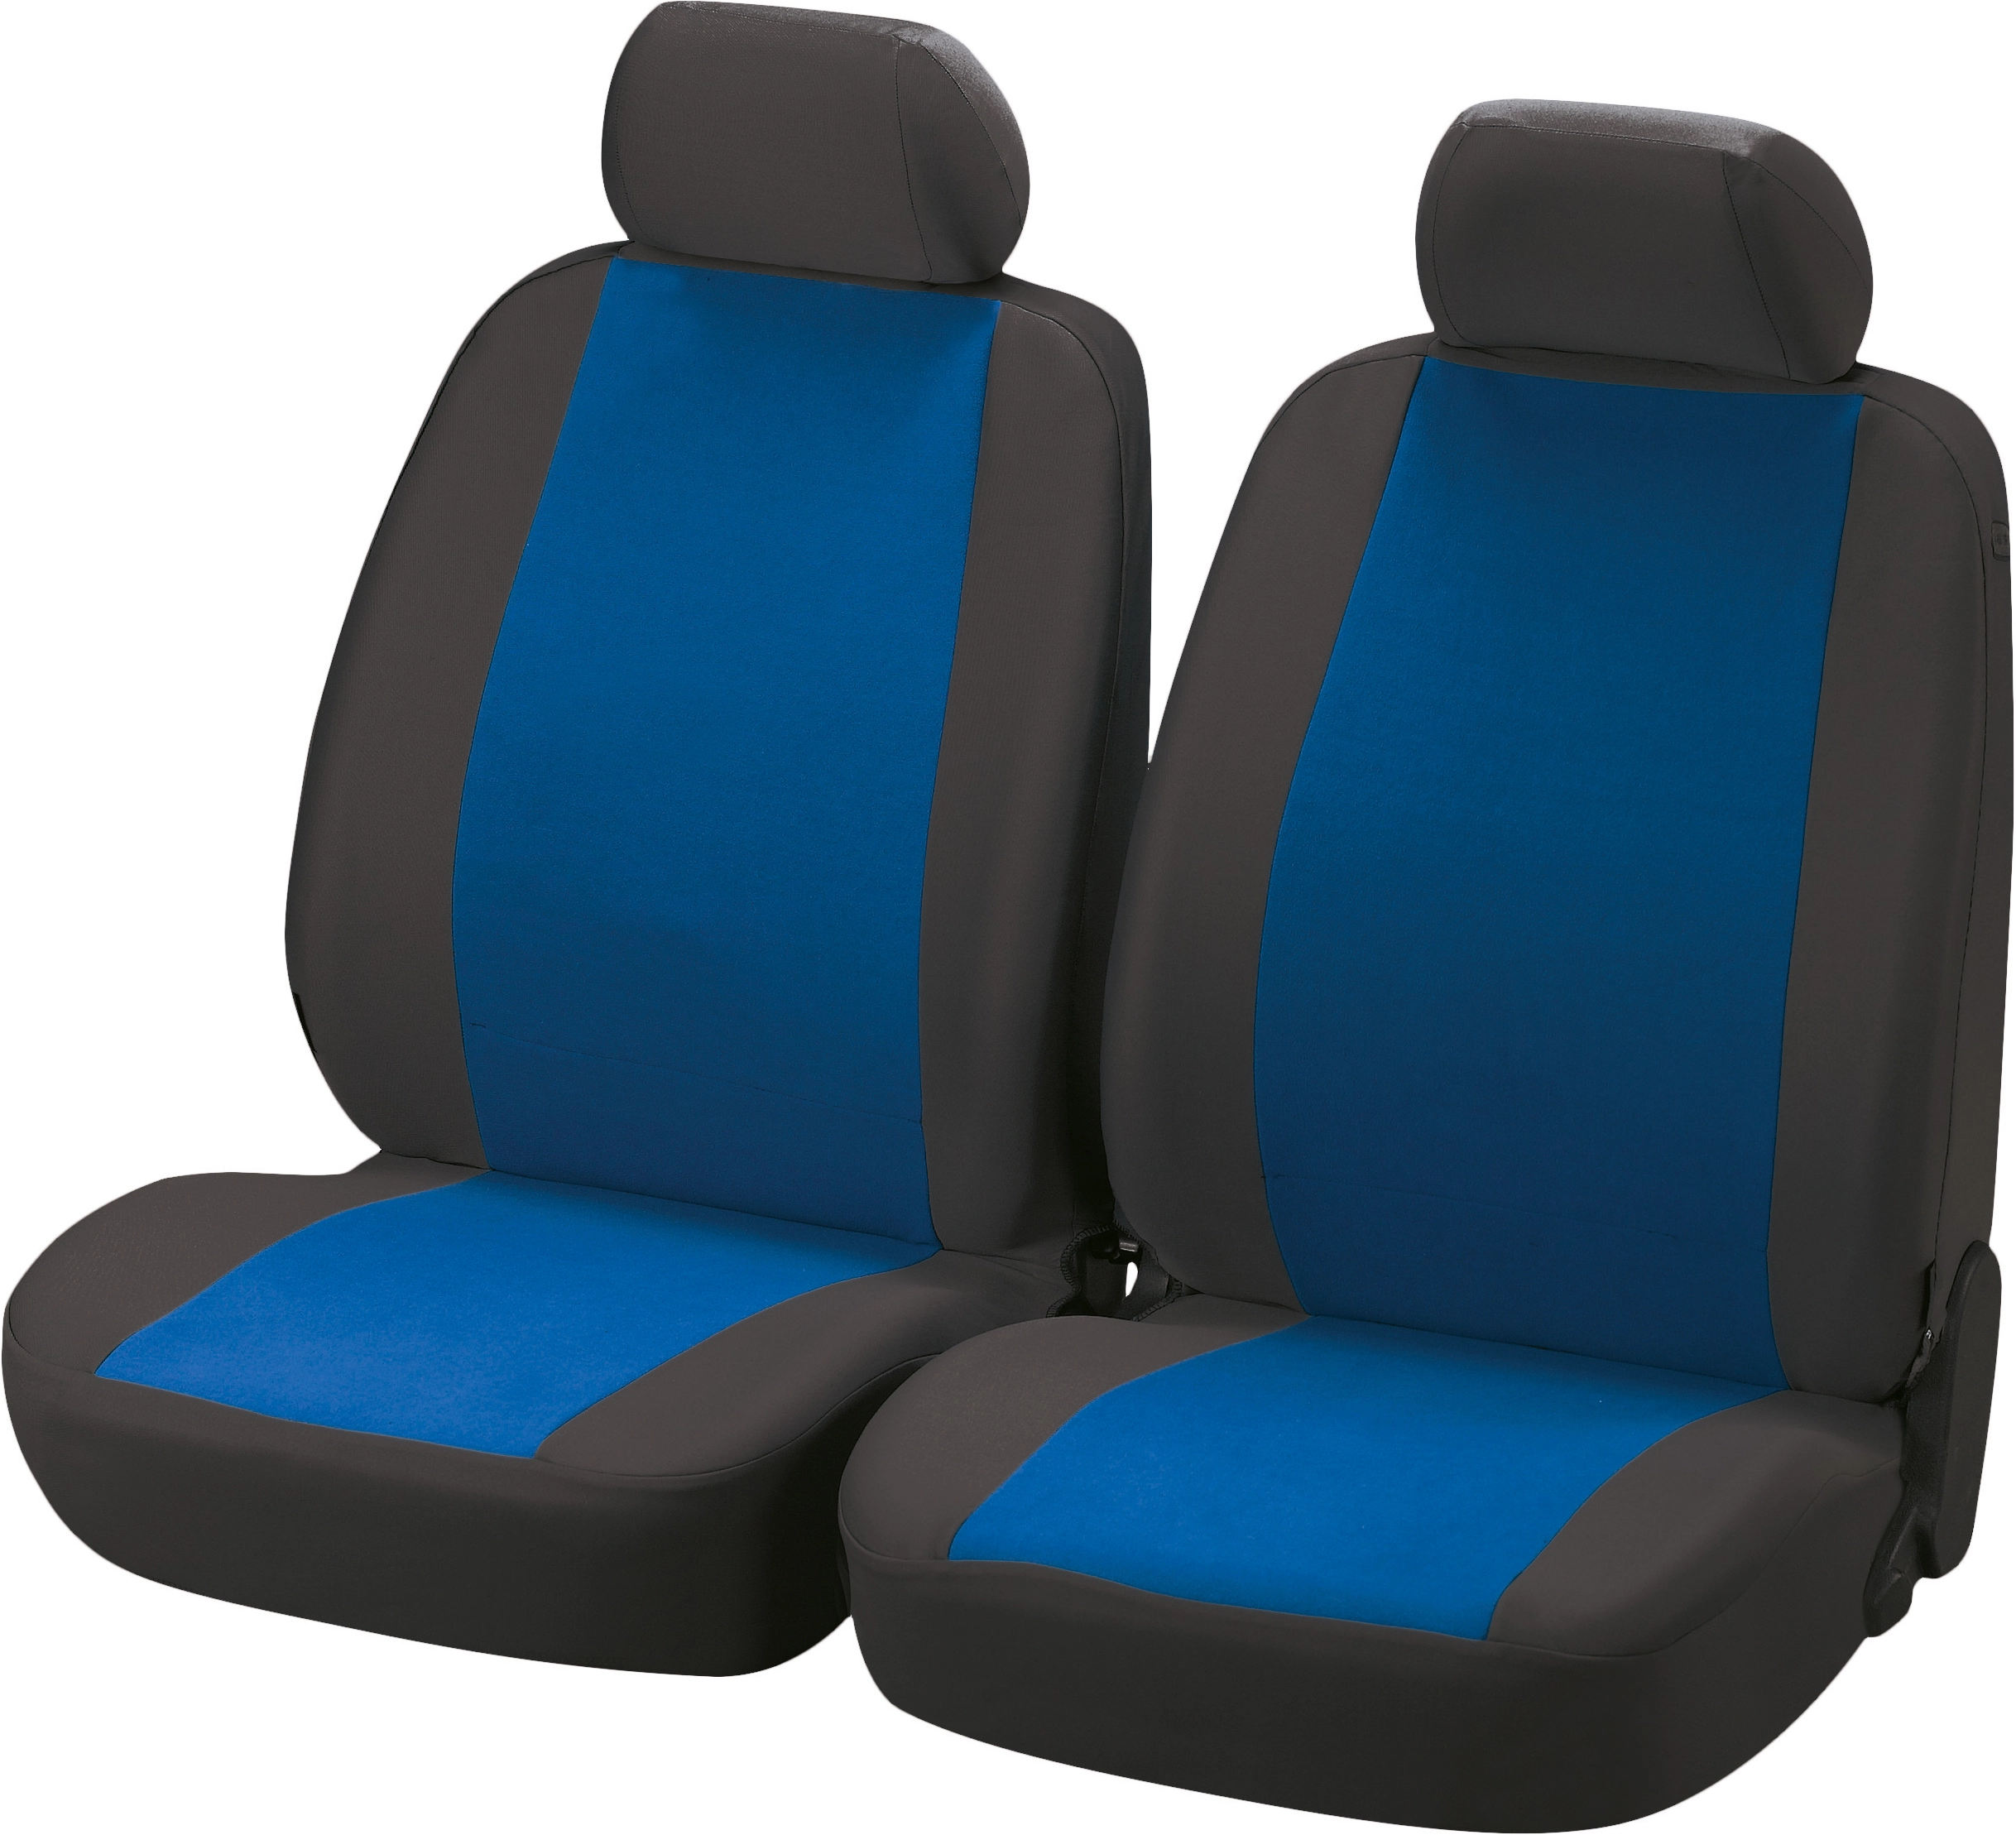 OBI Frontsitzbezug Classic 2er Set Blau kaufen bei OBI